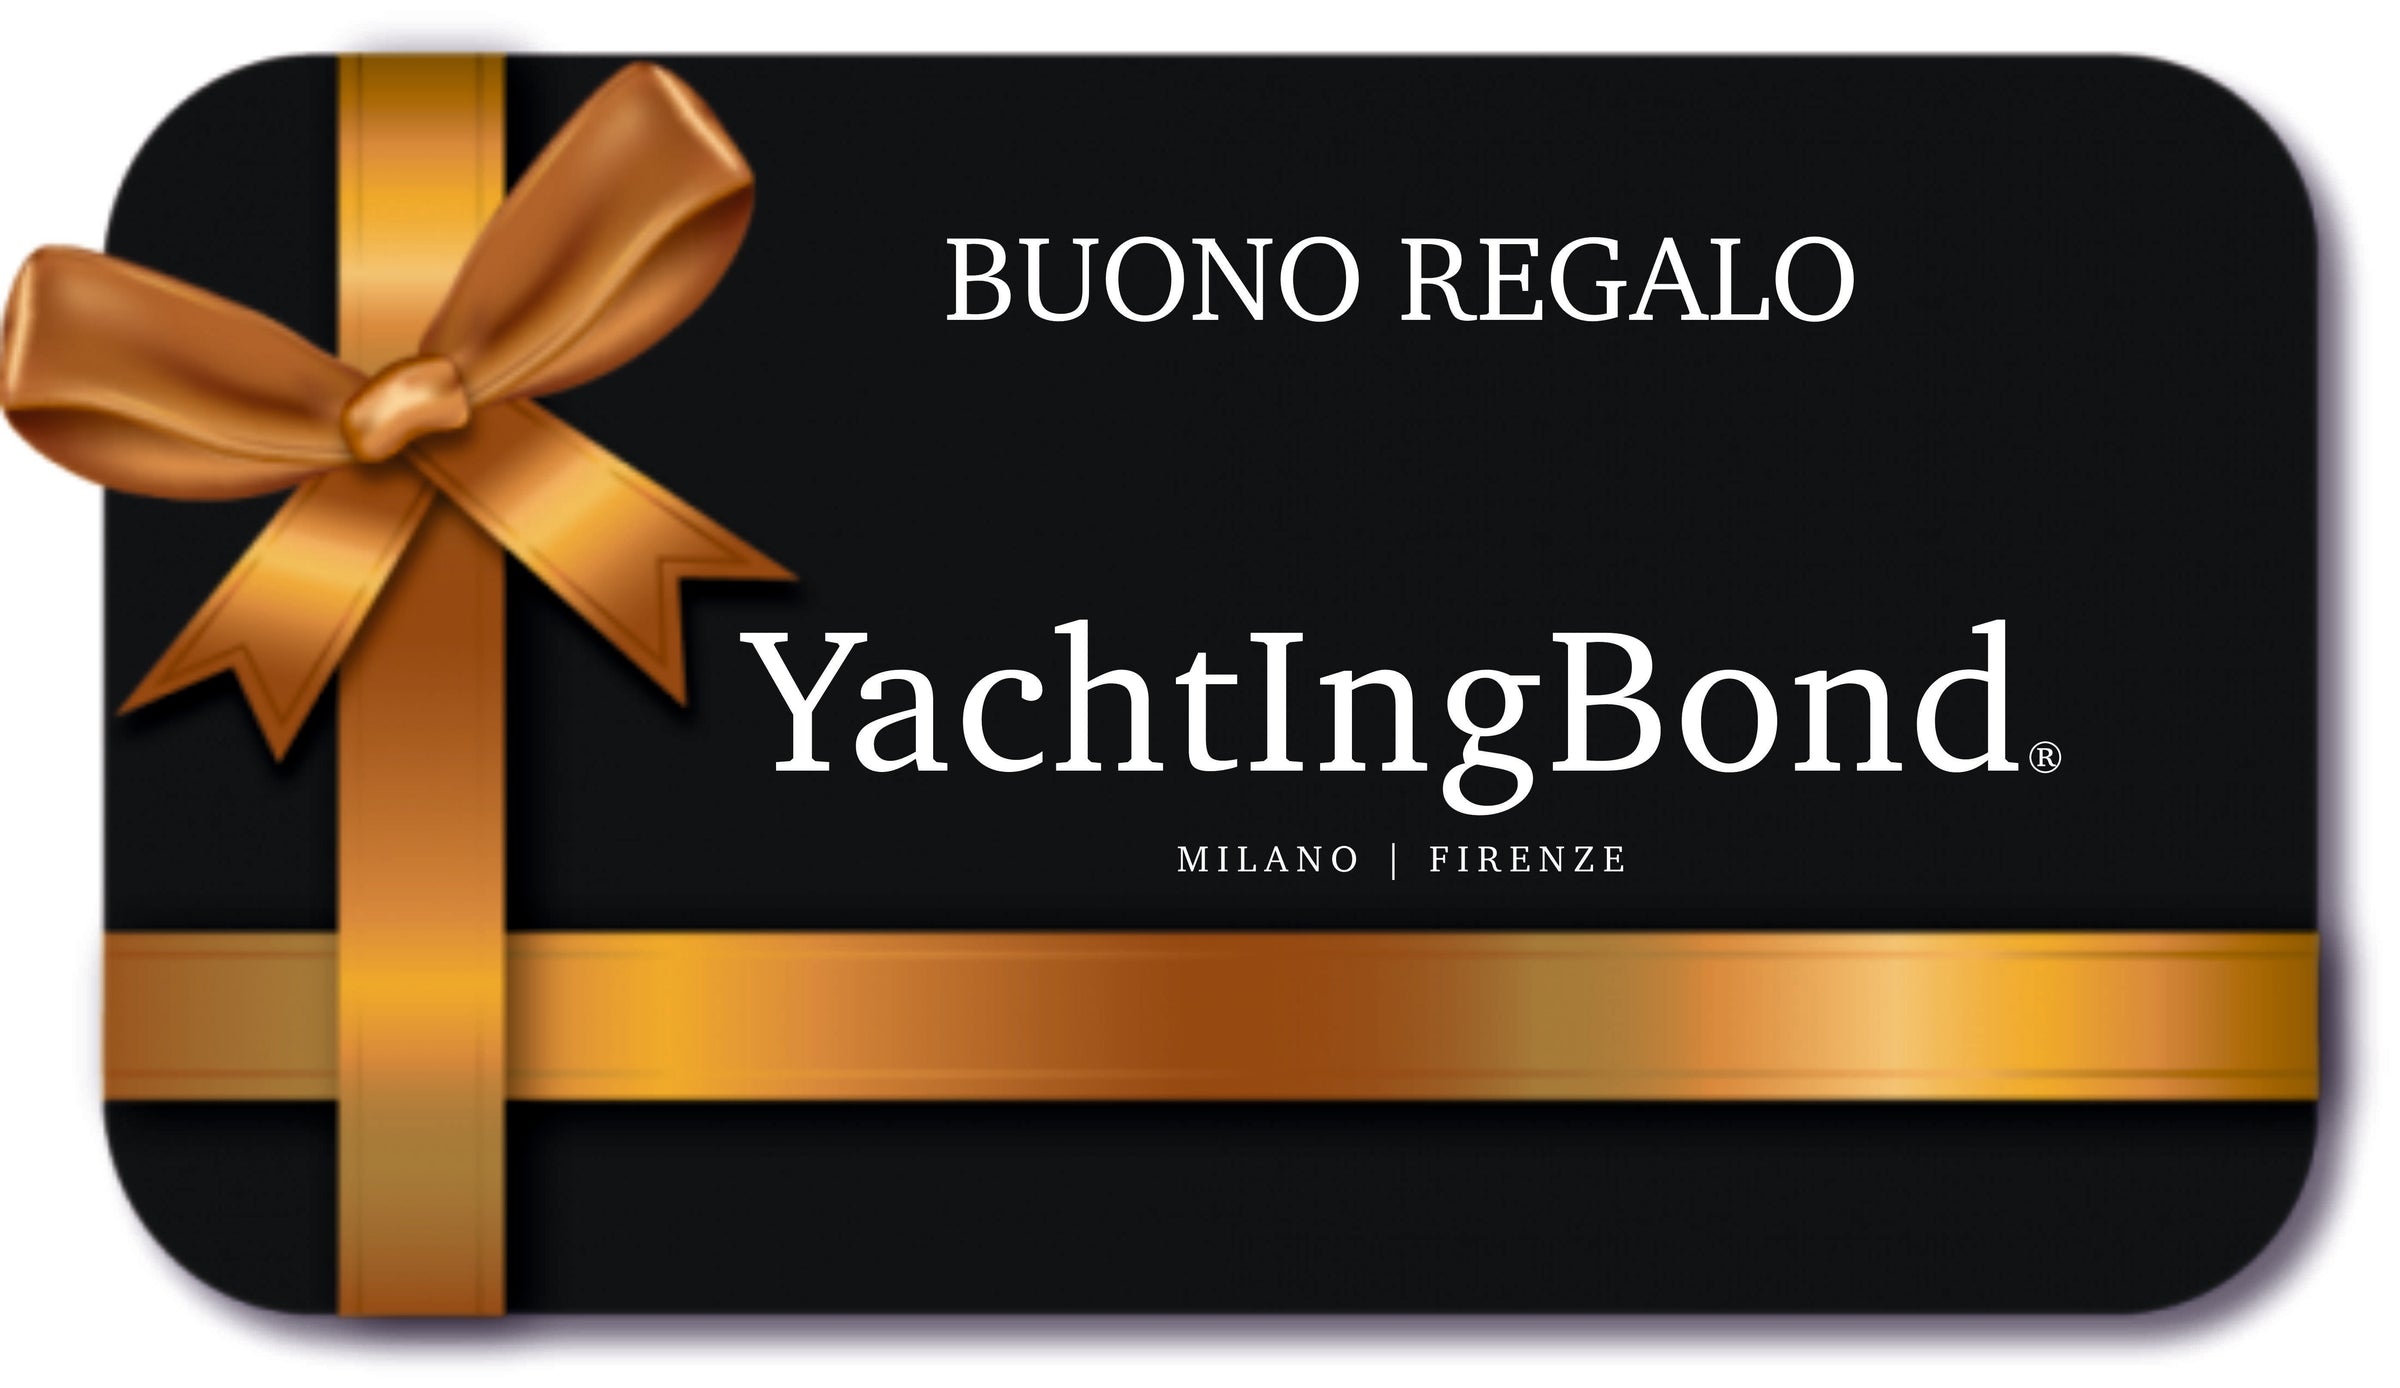 BUONI REGALO  - YachtIngBond